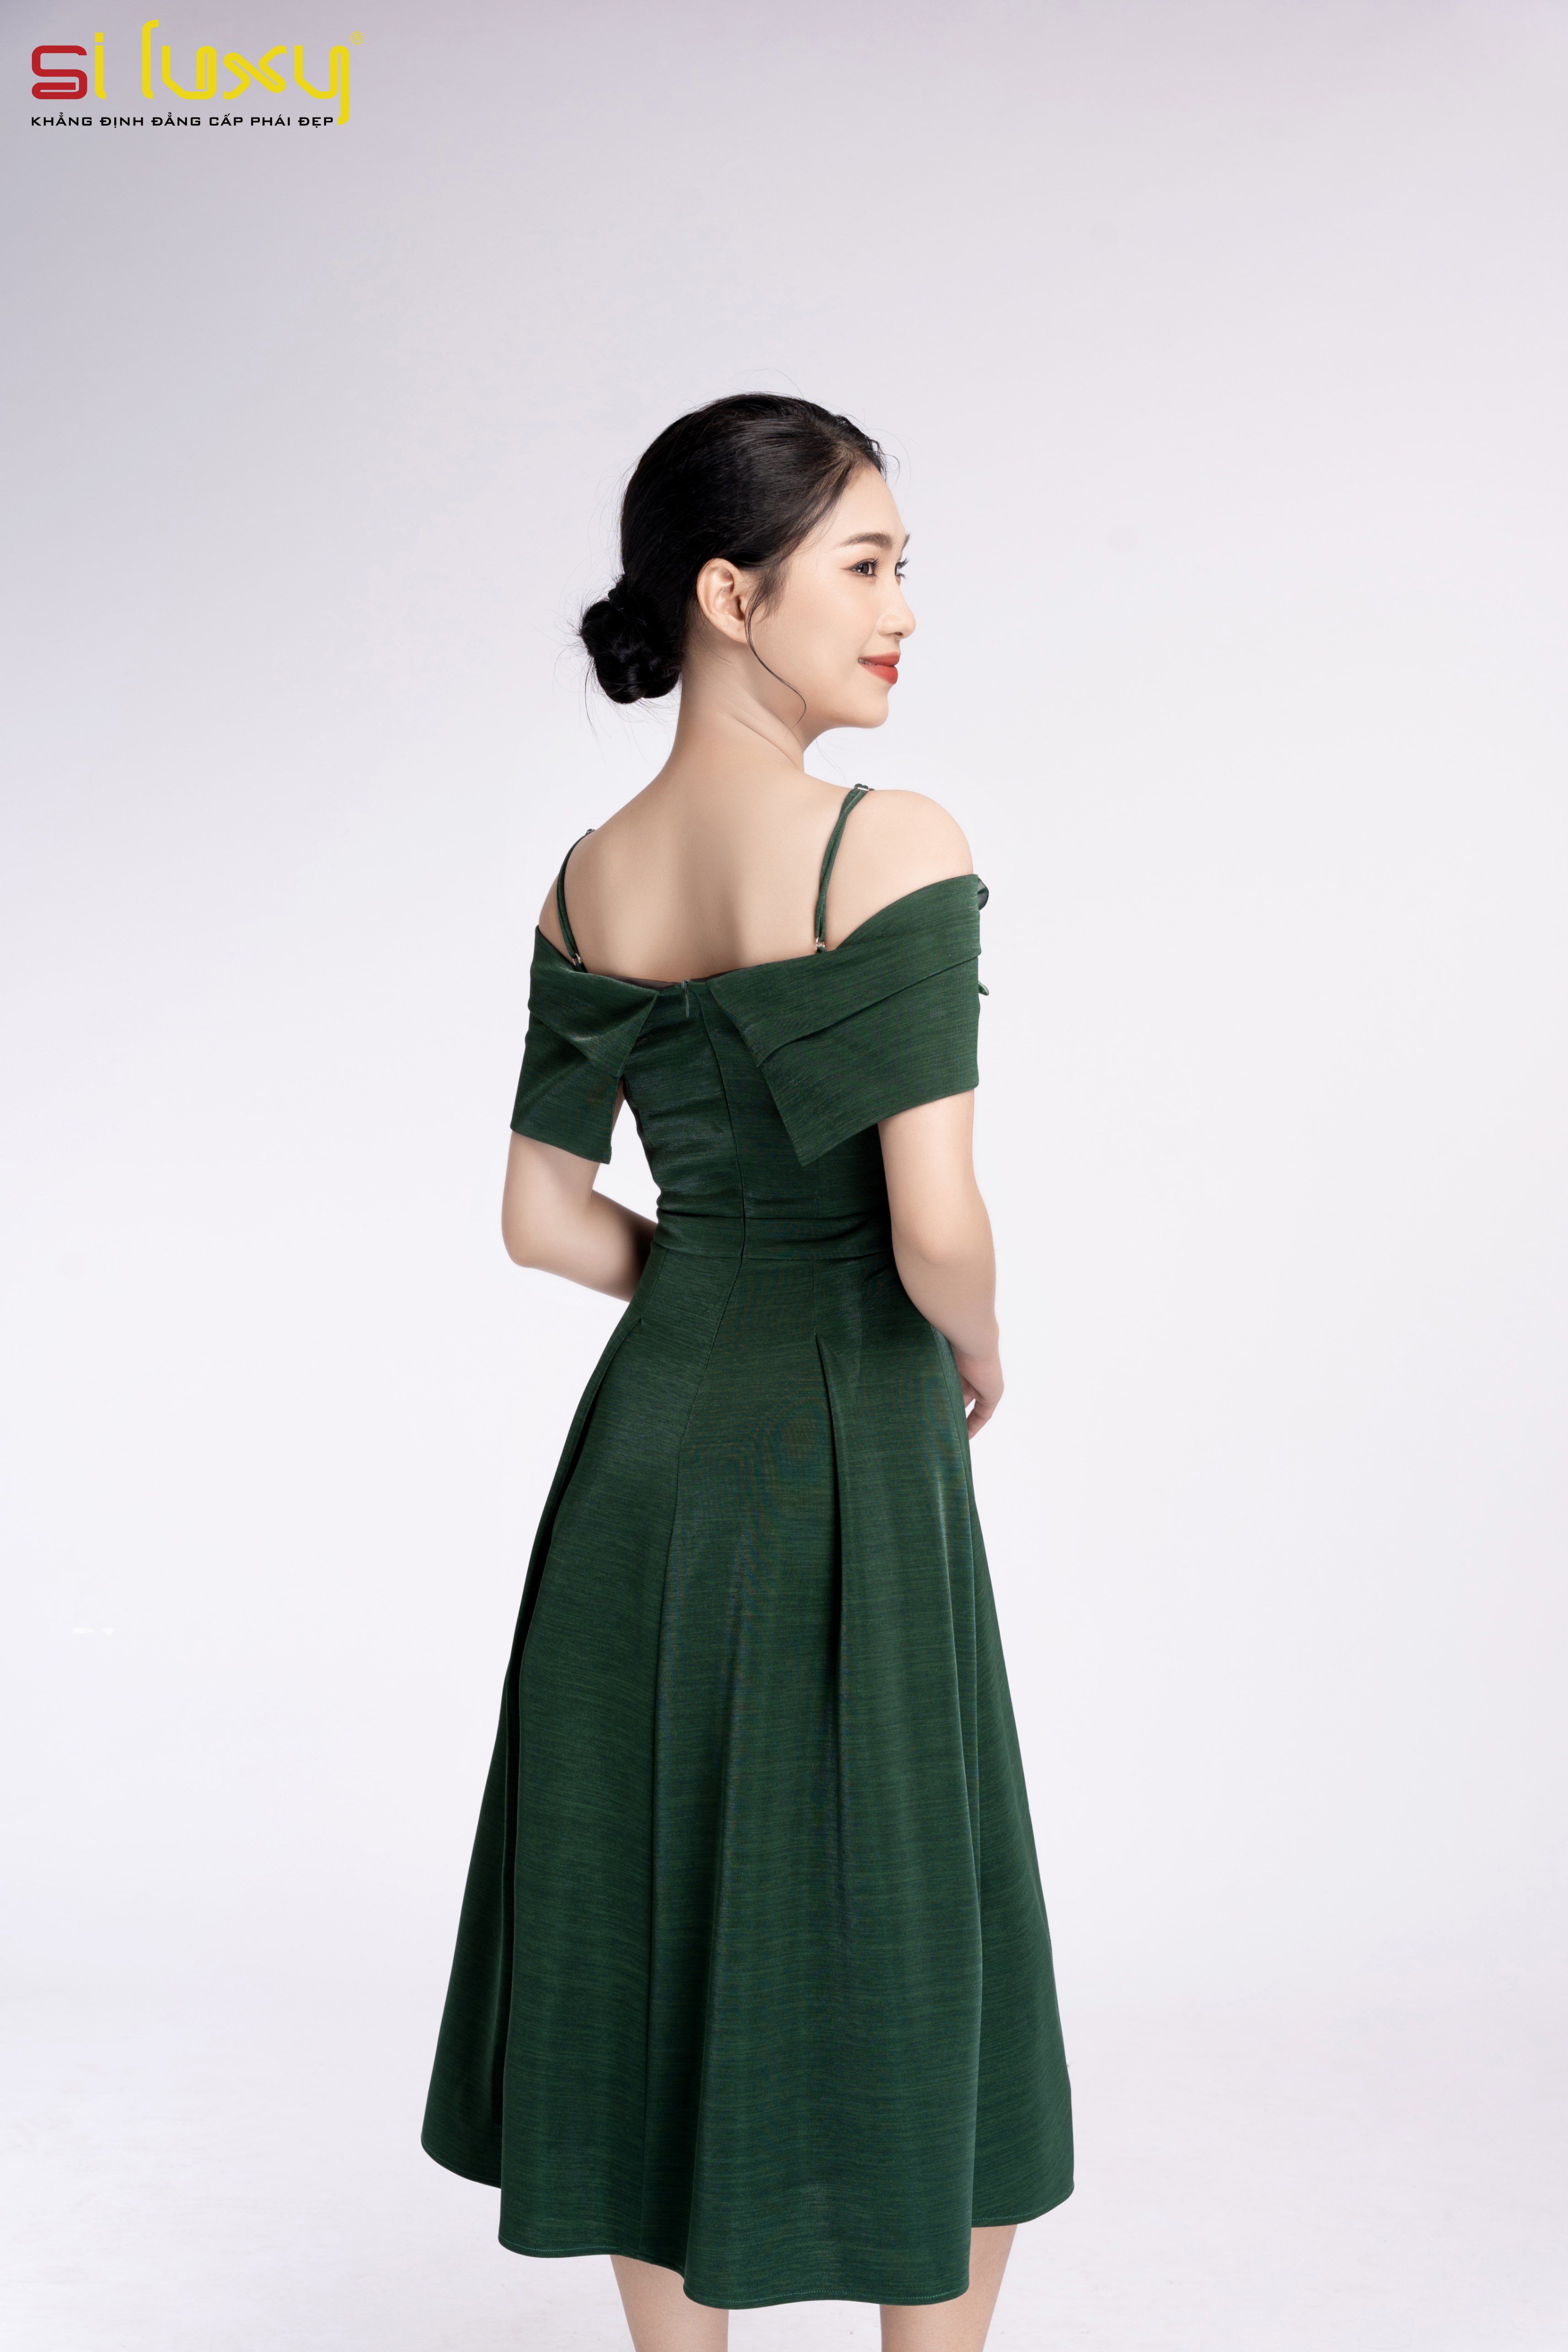 Hoa hậu Ngọc Châu gợi cảm với áo váy xuyên thấu